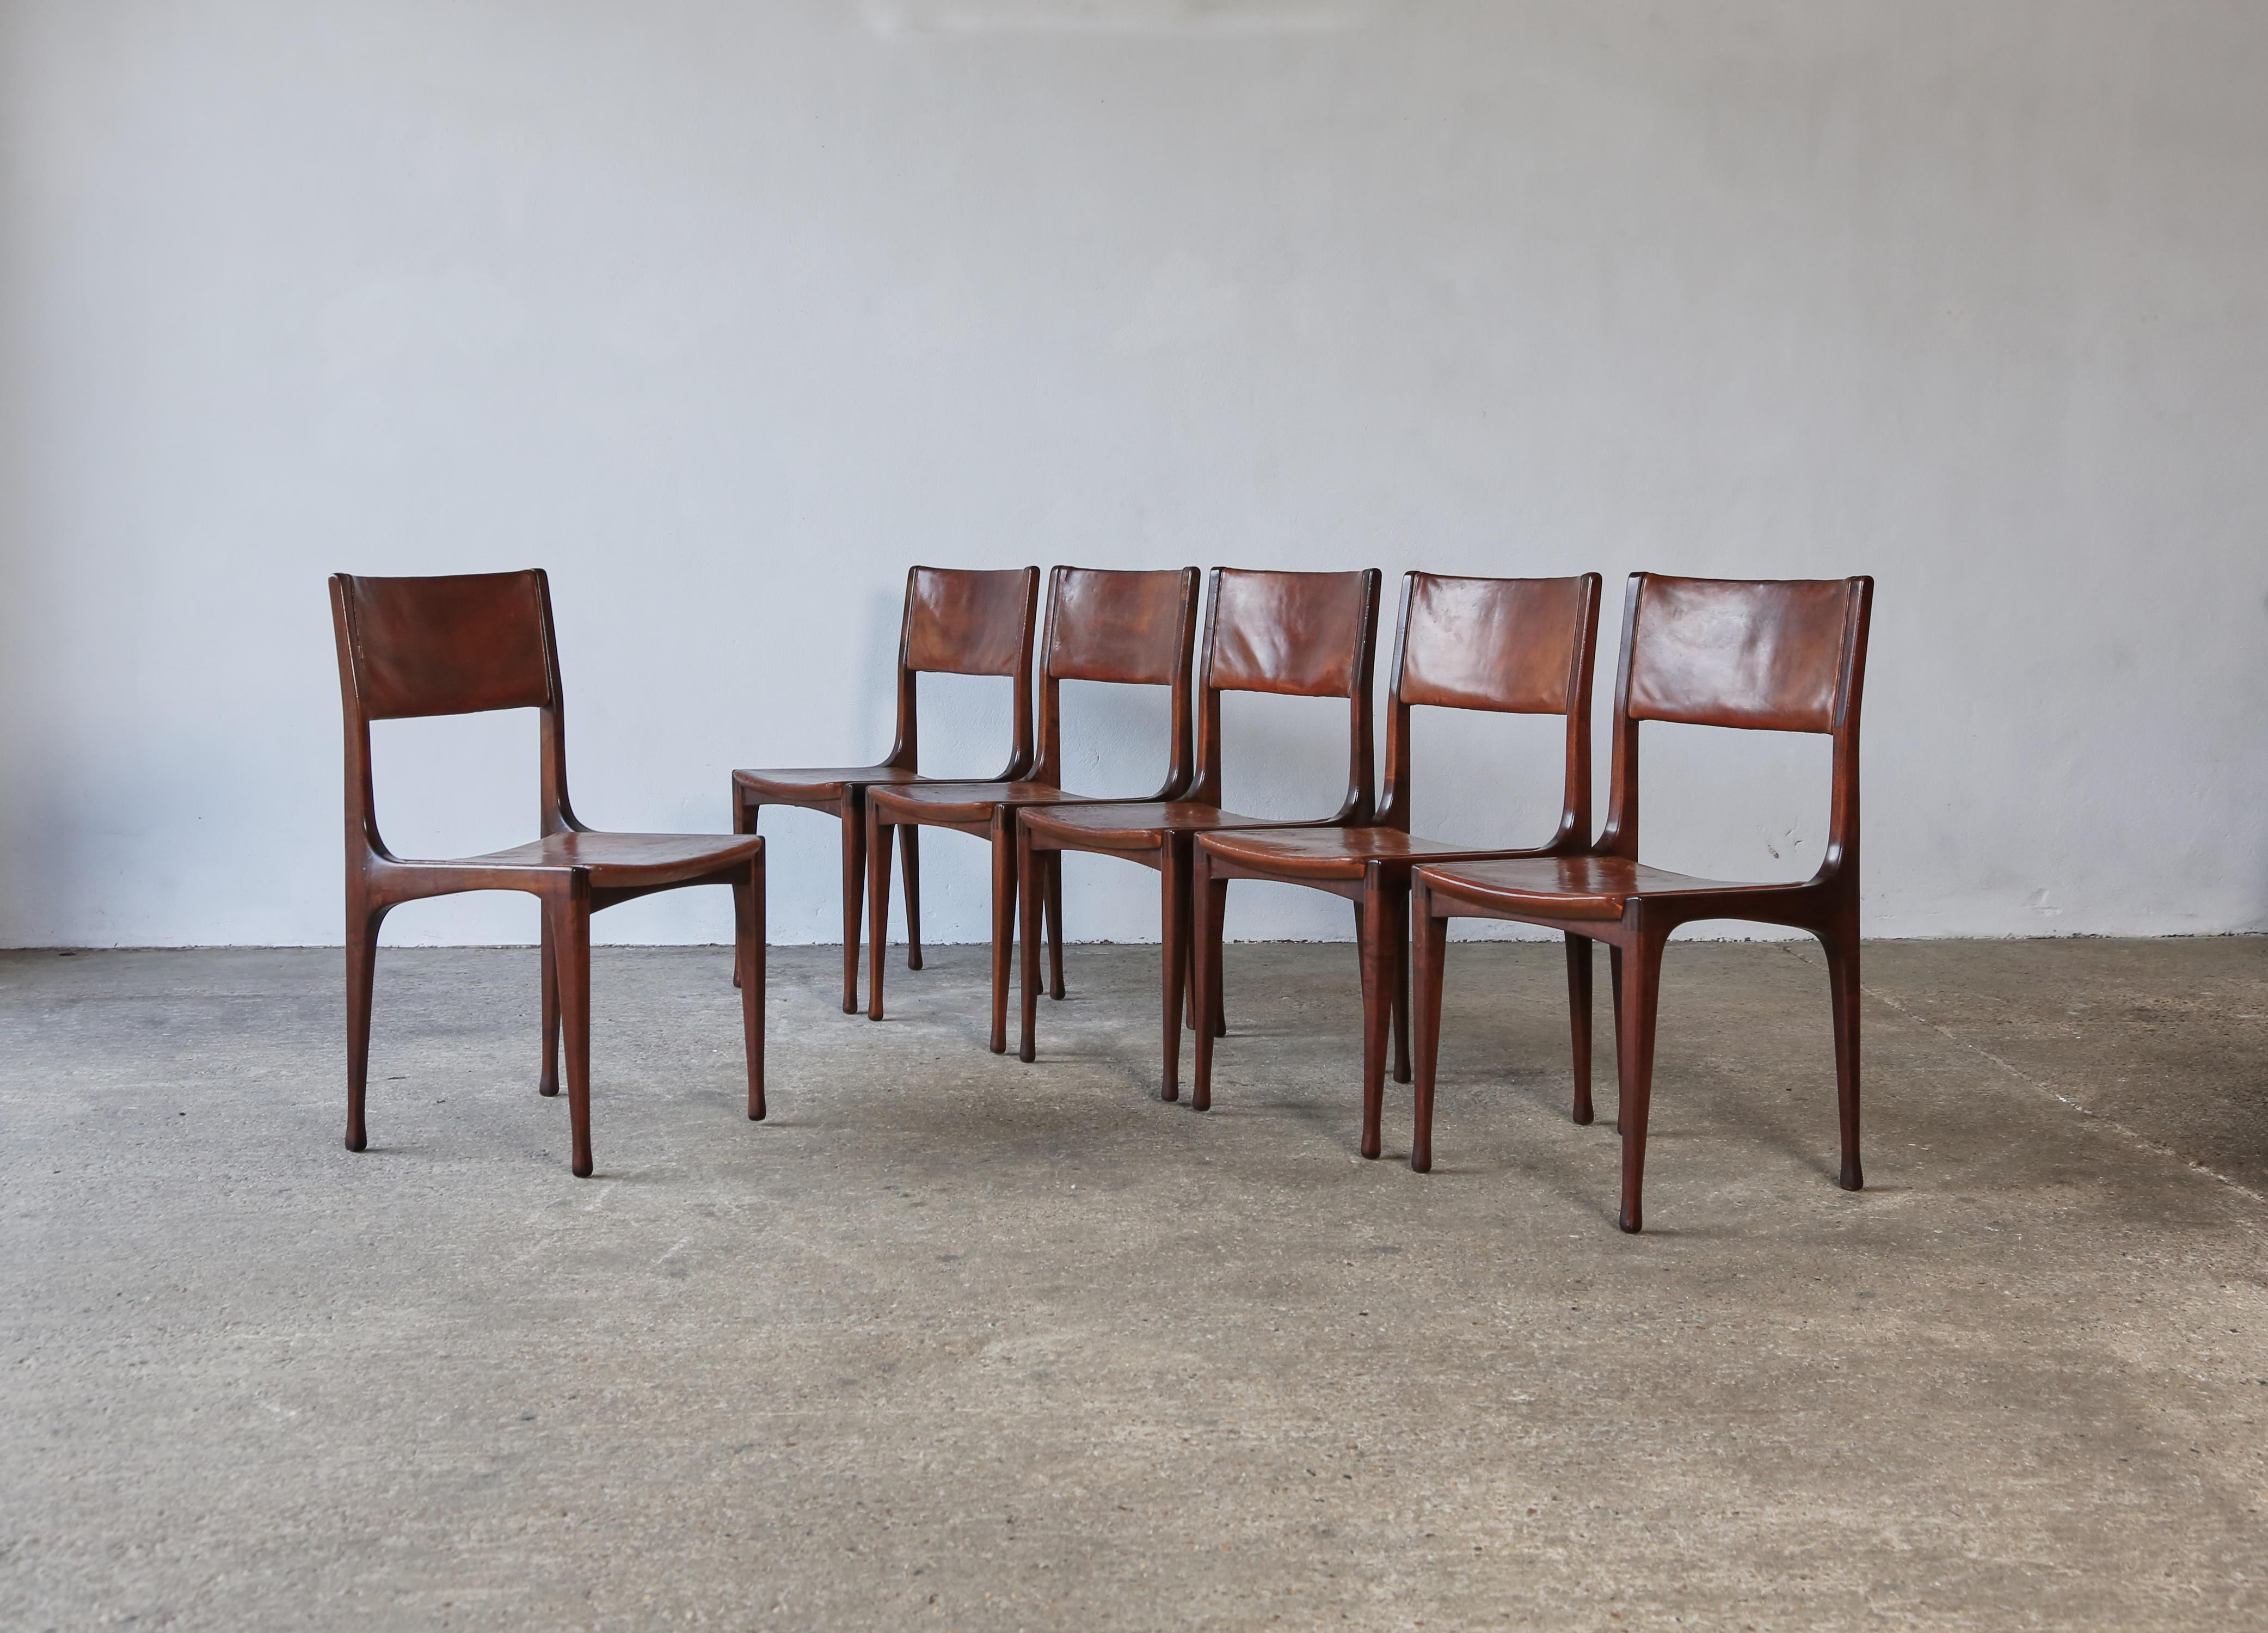 Ein außergewöhnlicher Satz von sechs frühen Stühlen des Modells 693, von Carlo de Carli für Cassina, Italien, 1950er Jahre. Ungewöhnlich ist, dass die Stühle das ursprüngliche Leder mit einer tiefen, reichen Patina behalten. Die Rahmen sind in gutem